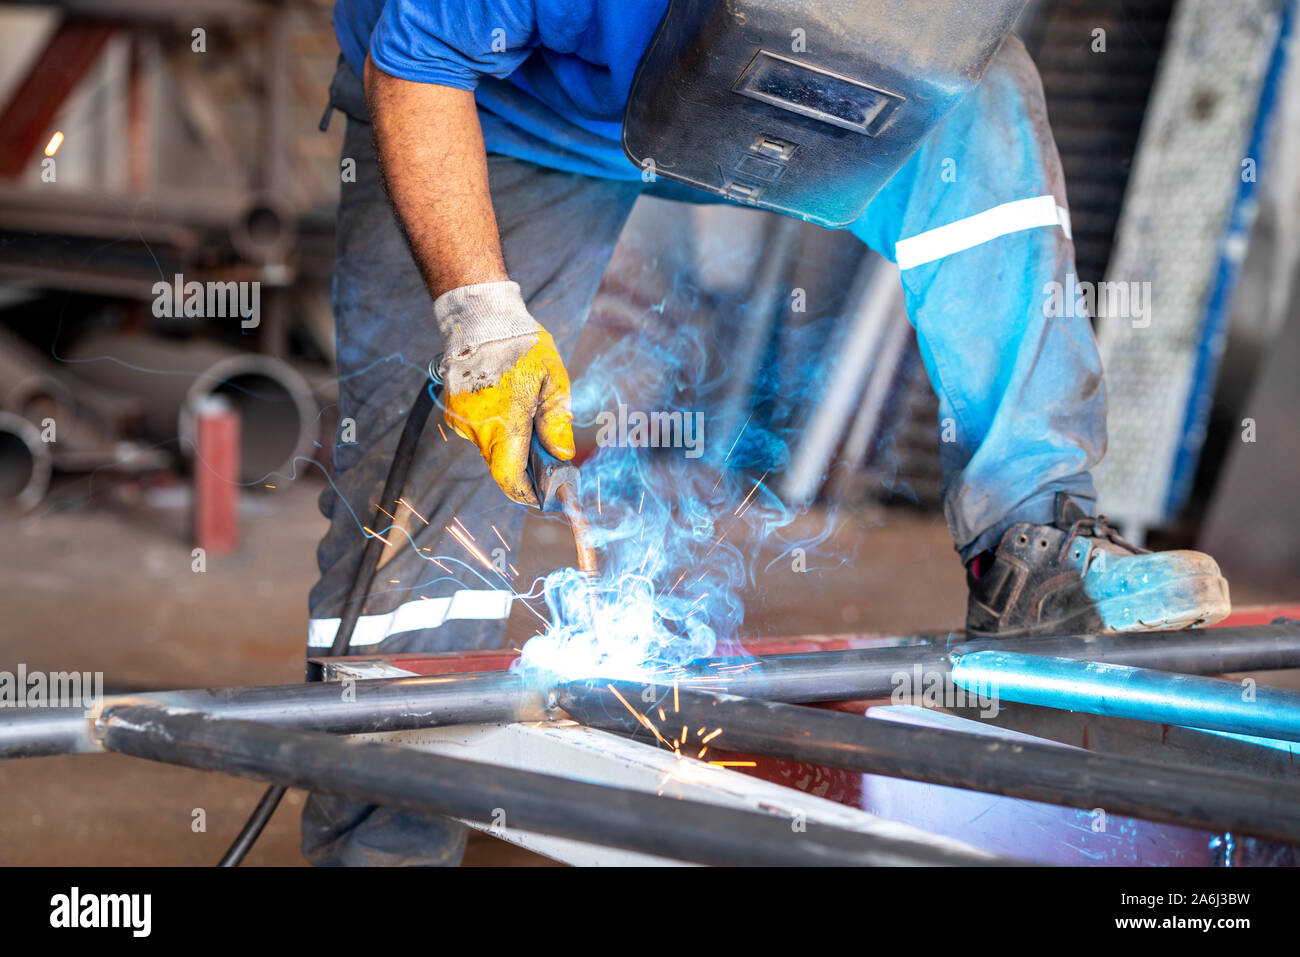 Obrero metalúrgico es soldar metales con protección de él mismo. Foto de stock